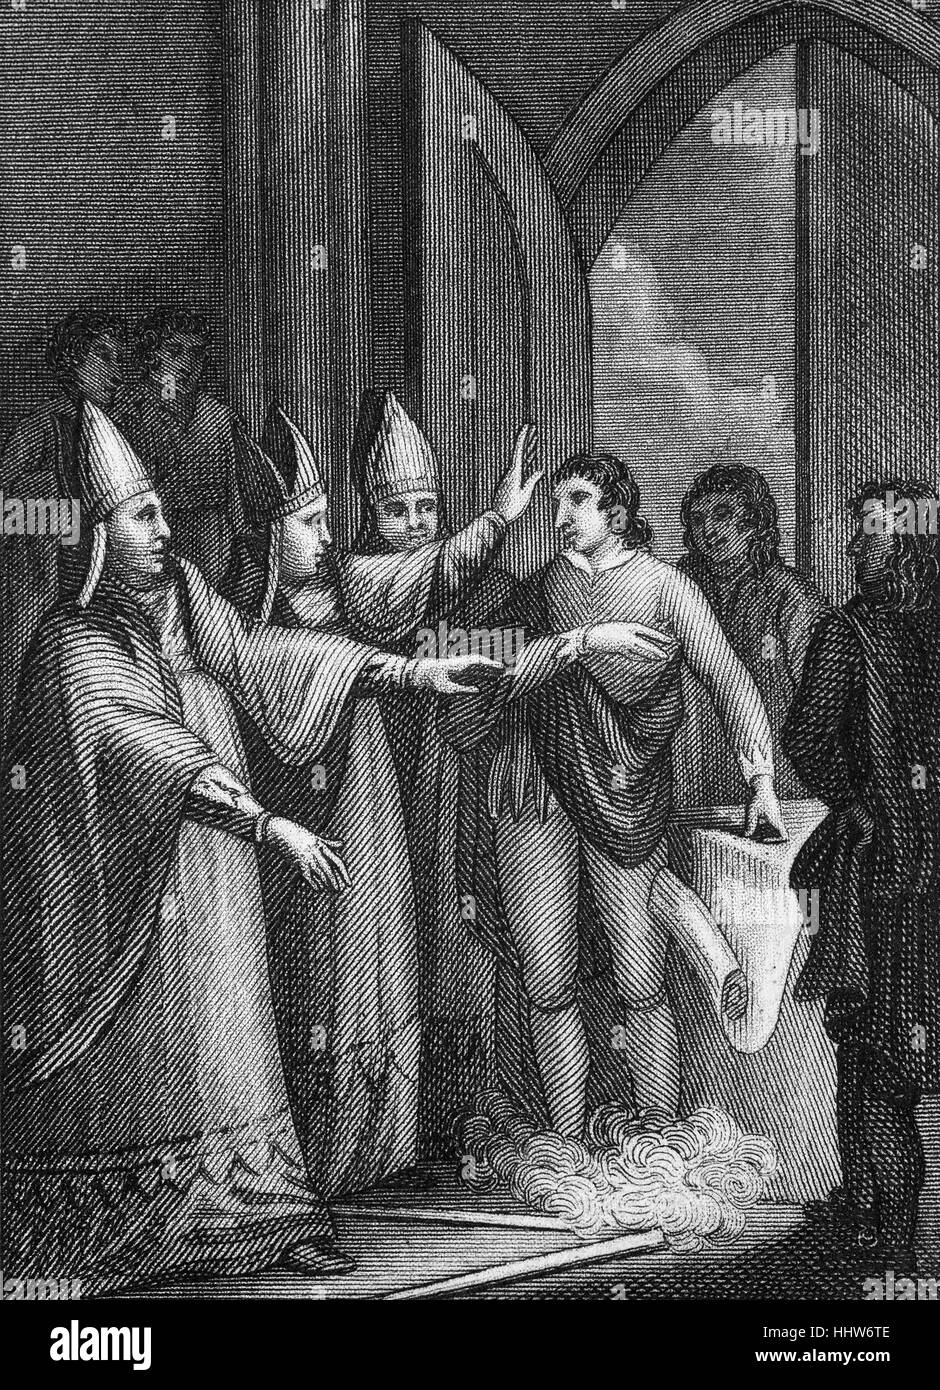 Magna Carta, oder "The Great Charta", wurde ursprünglich von König John von England als Lösung für die politische Krise ausgestellt, die er im Jahre 1215 konfrontiert. Das Prinzip, das jeder, auch der König, dem Gesetz unterworfen wurde festgestellt zum ersten Mal. Jedoch eher von König Johann und die Barone ignoriert werden. Dann Henry III (1216-1272), der älteste Sohn des Königs Johann eine überarbeitete Version des Dokuments in 1225 ausgestellt. Die Erteilung einer neuen Version der Charta von König Heinrich III Minderheitsregierung 1216 hatte seine Wirkung. Stockfoto